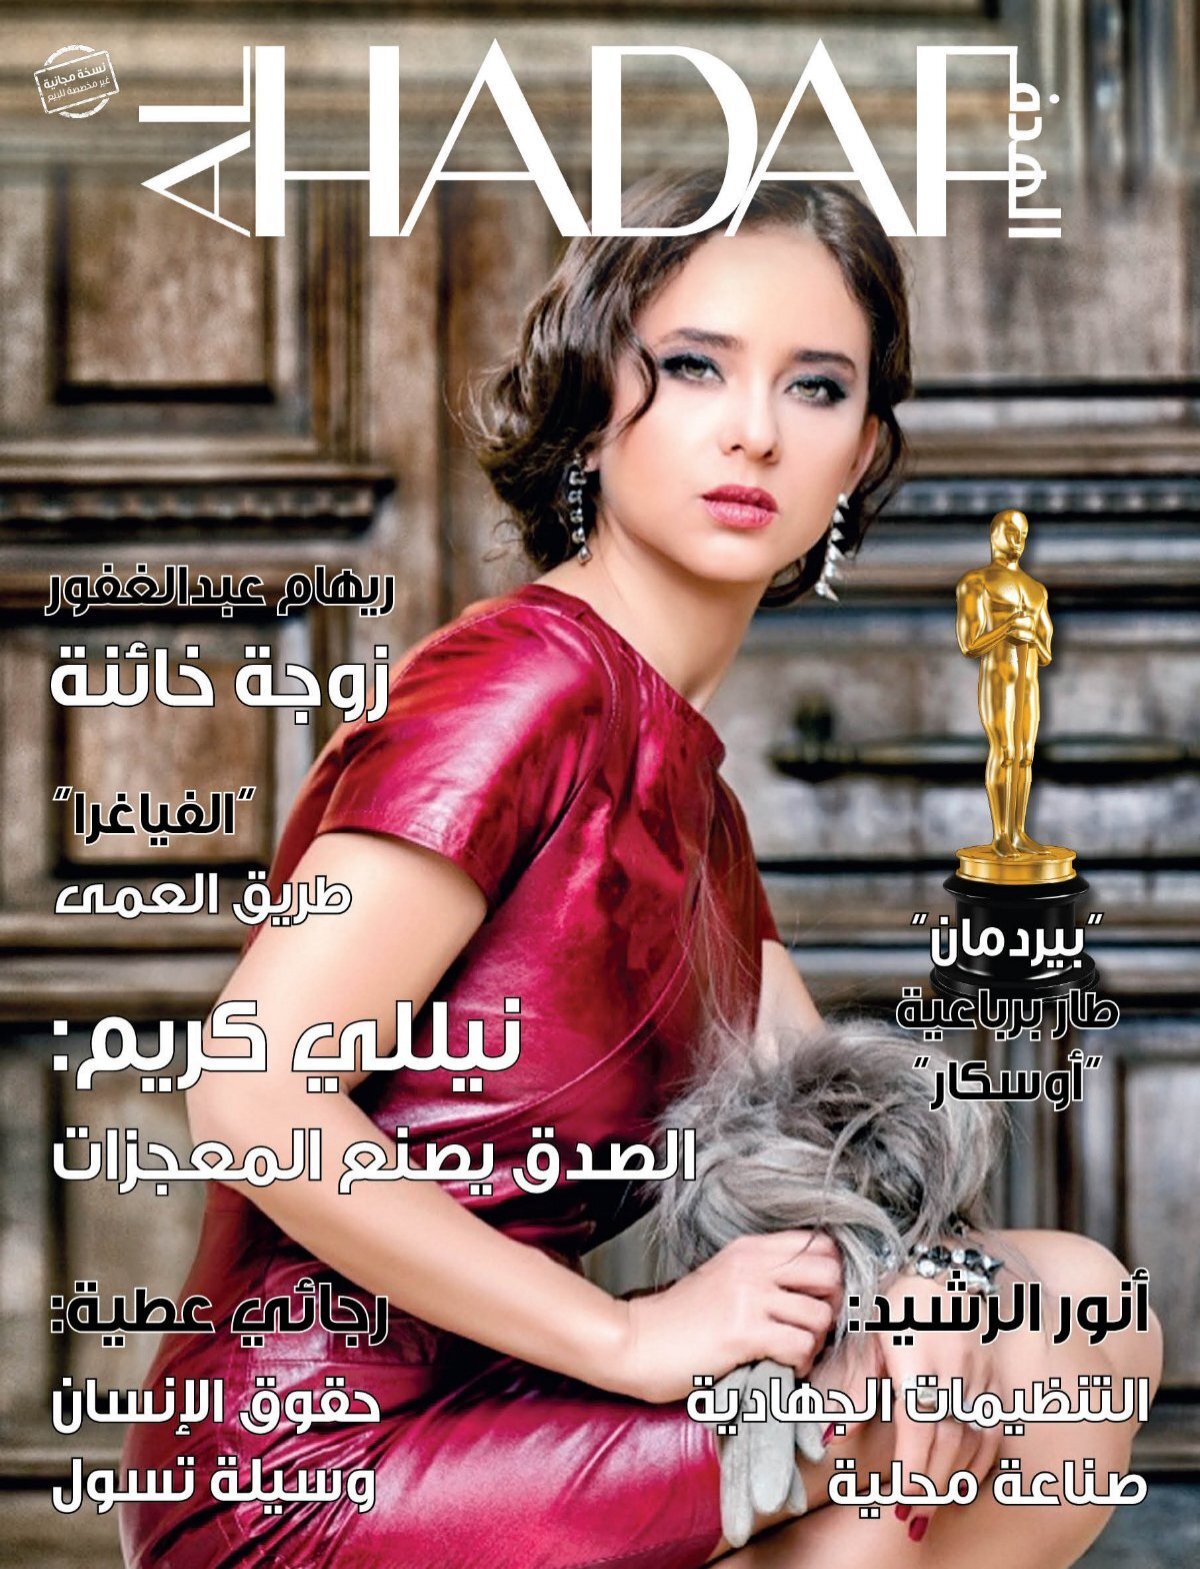 Alhadaf Magazine March 2015